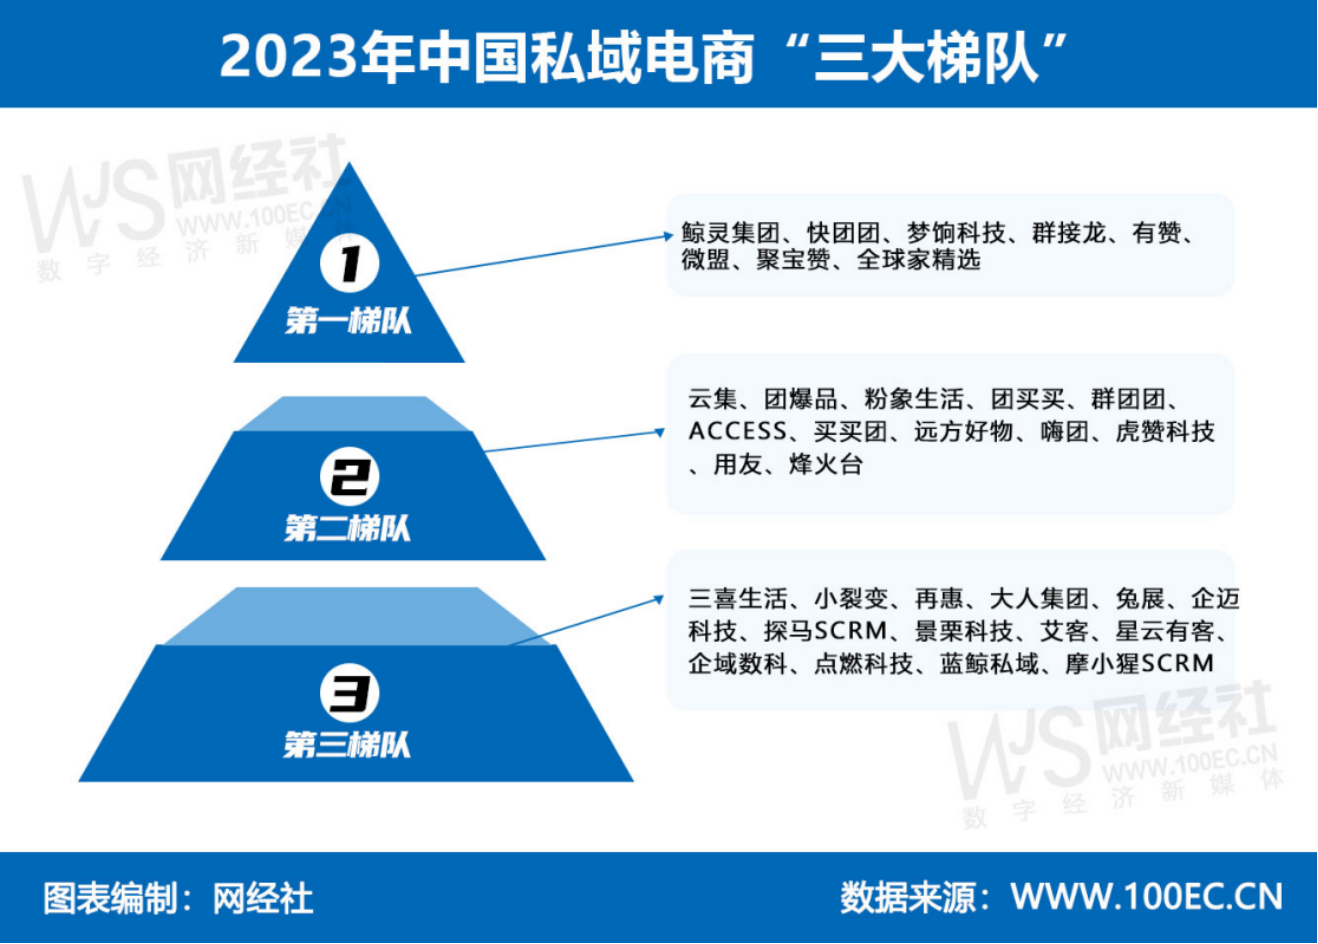 2023年私域电商交易规模达58万亿元 “三PG平台 电子大梯队”公布(图7)